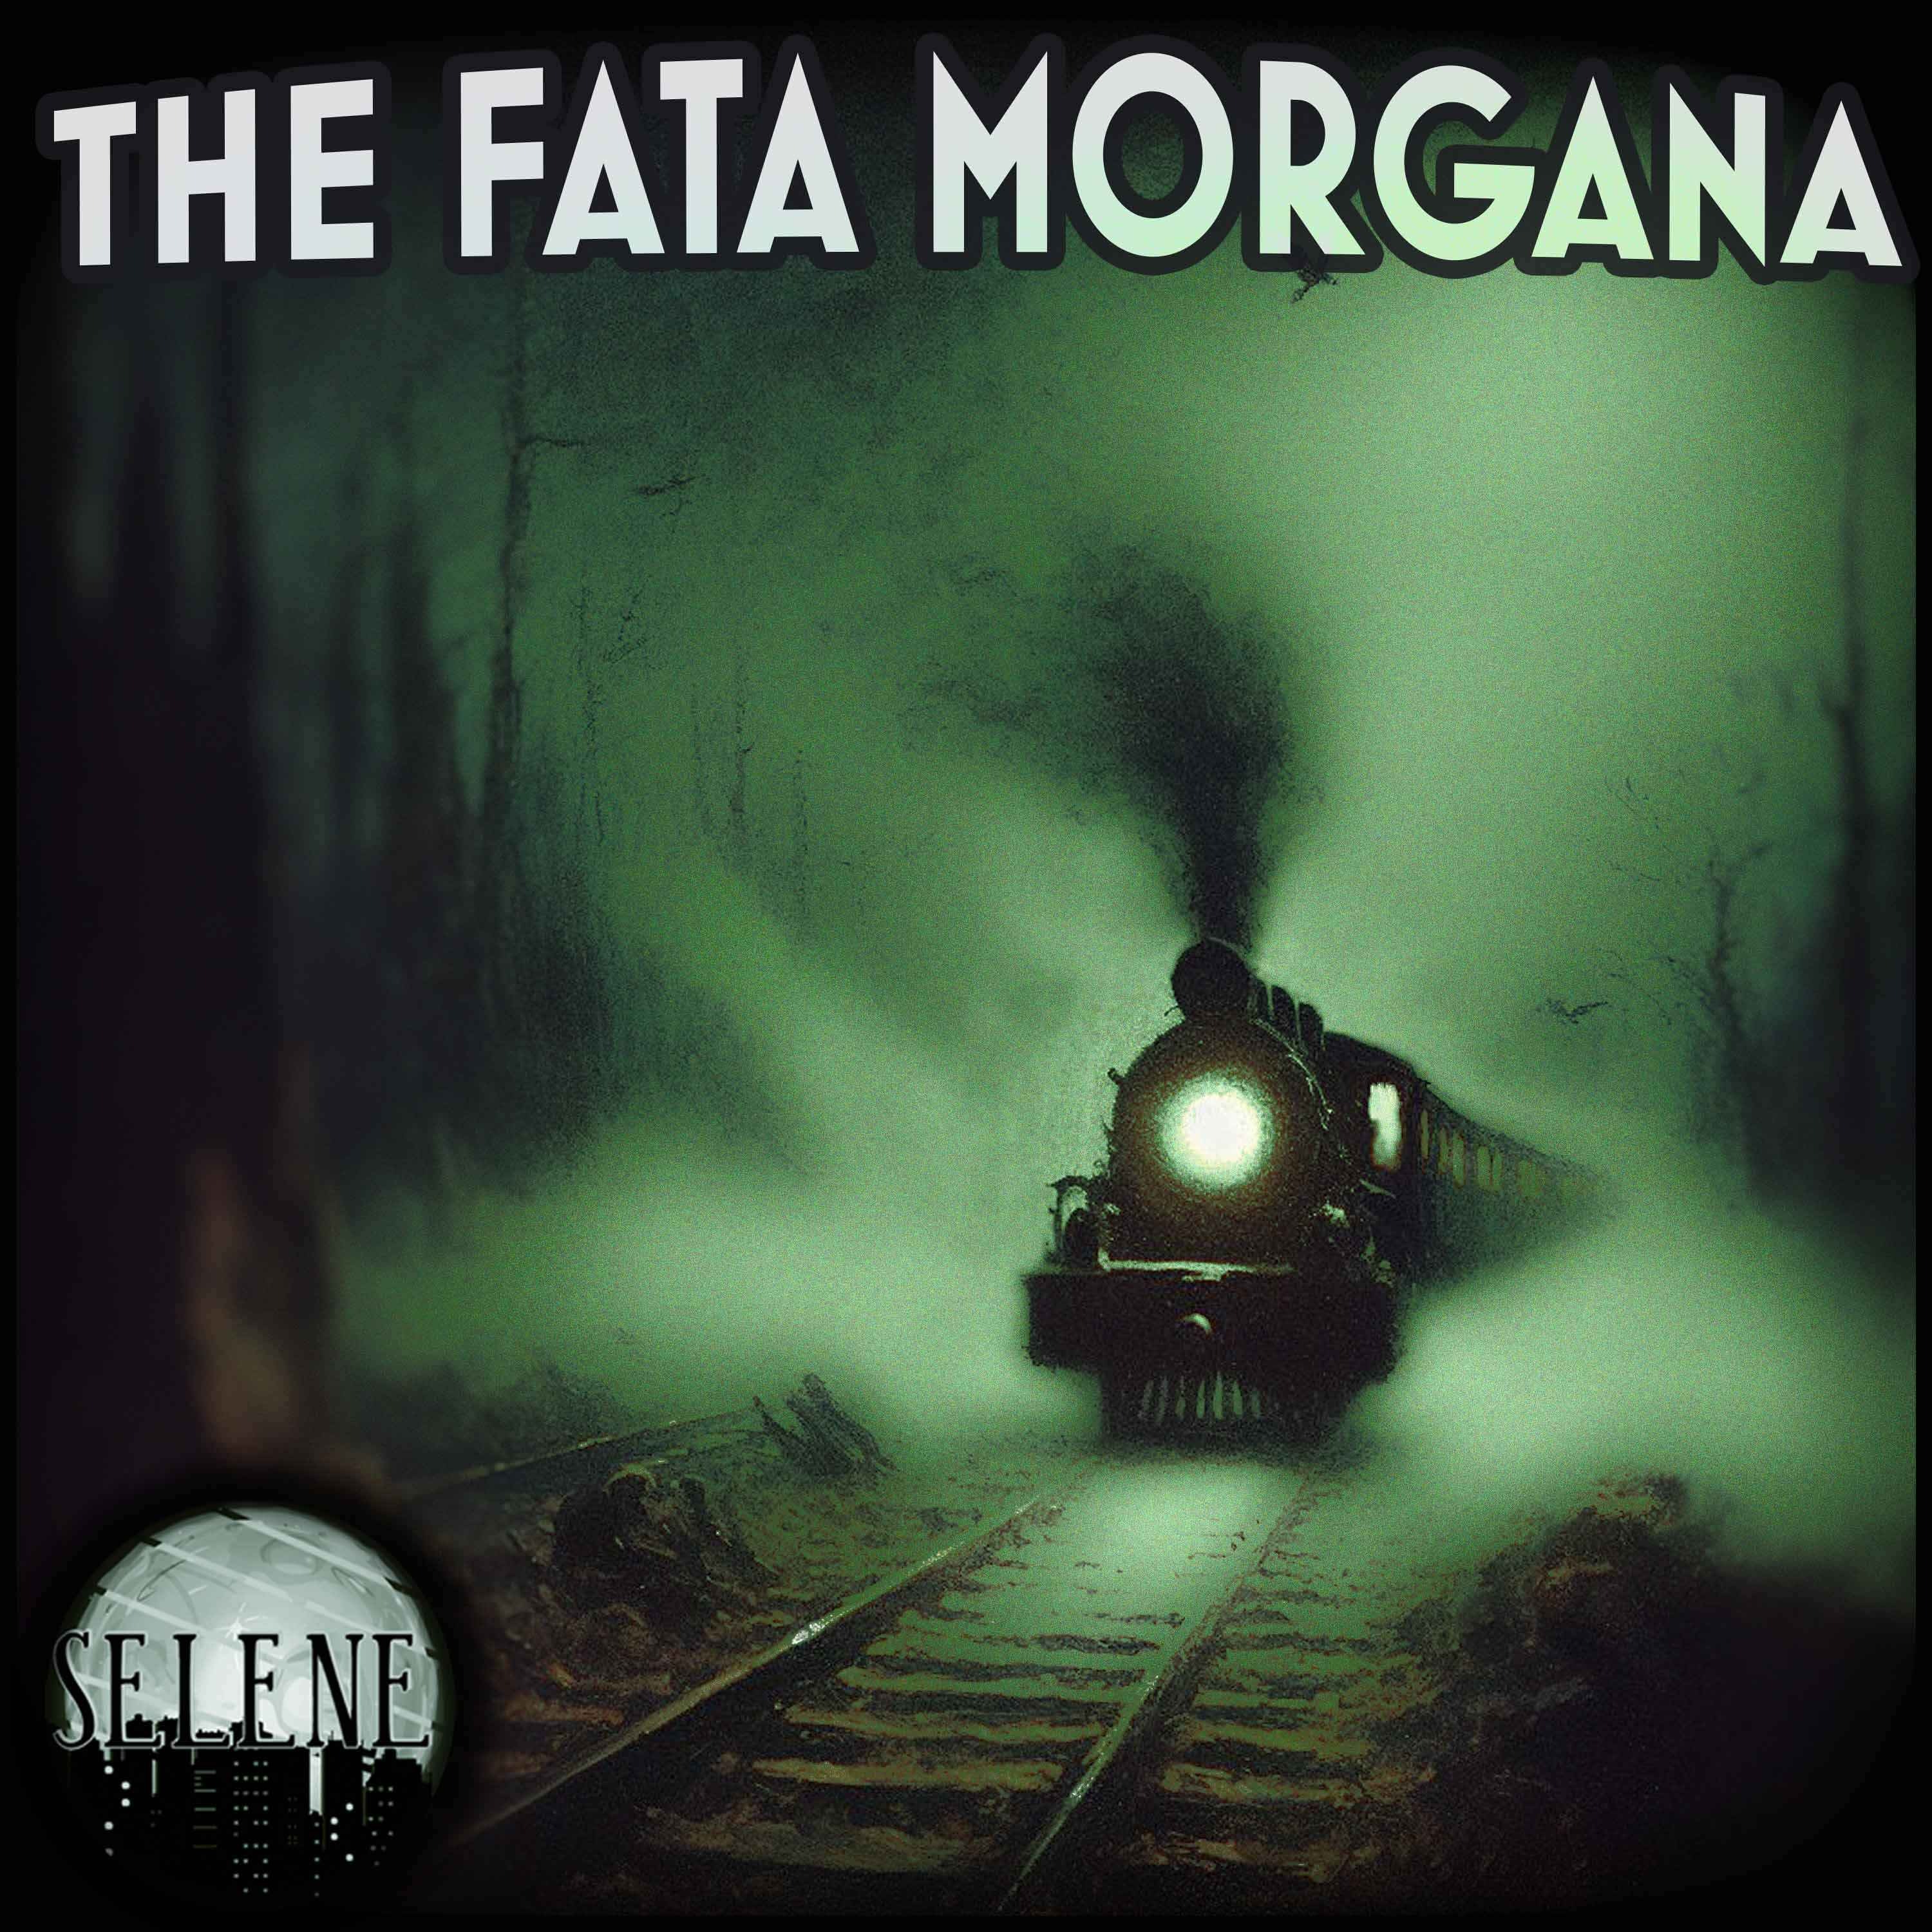 The Fata Morgana - Trailer